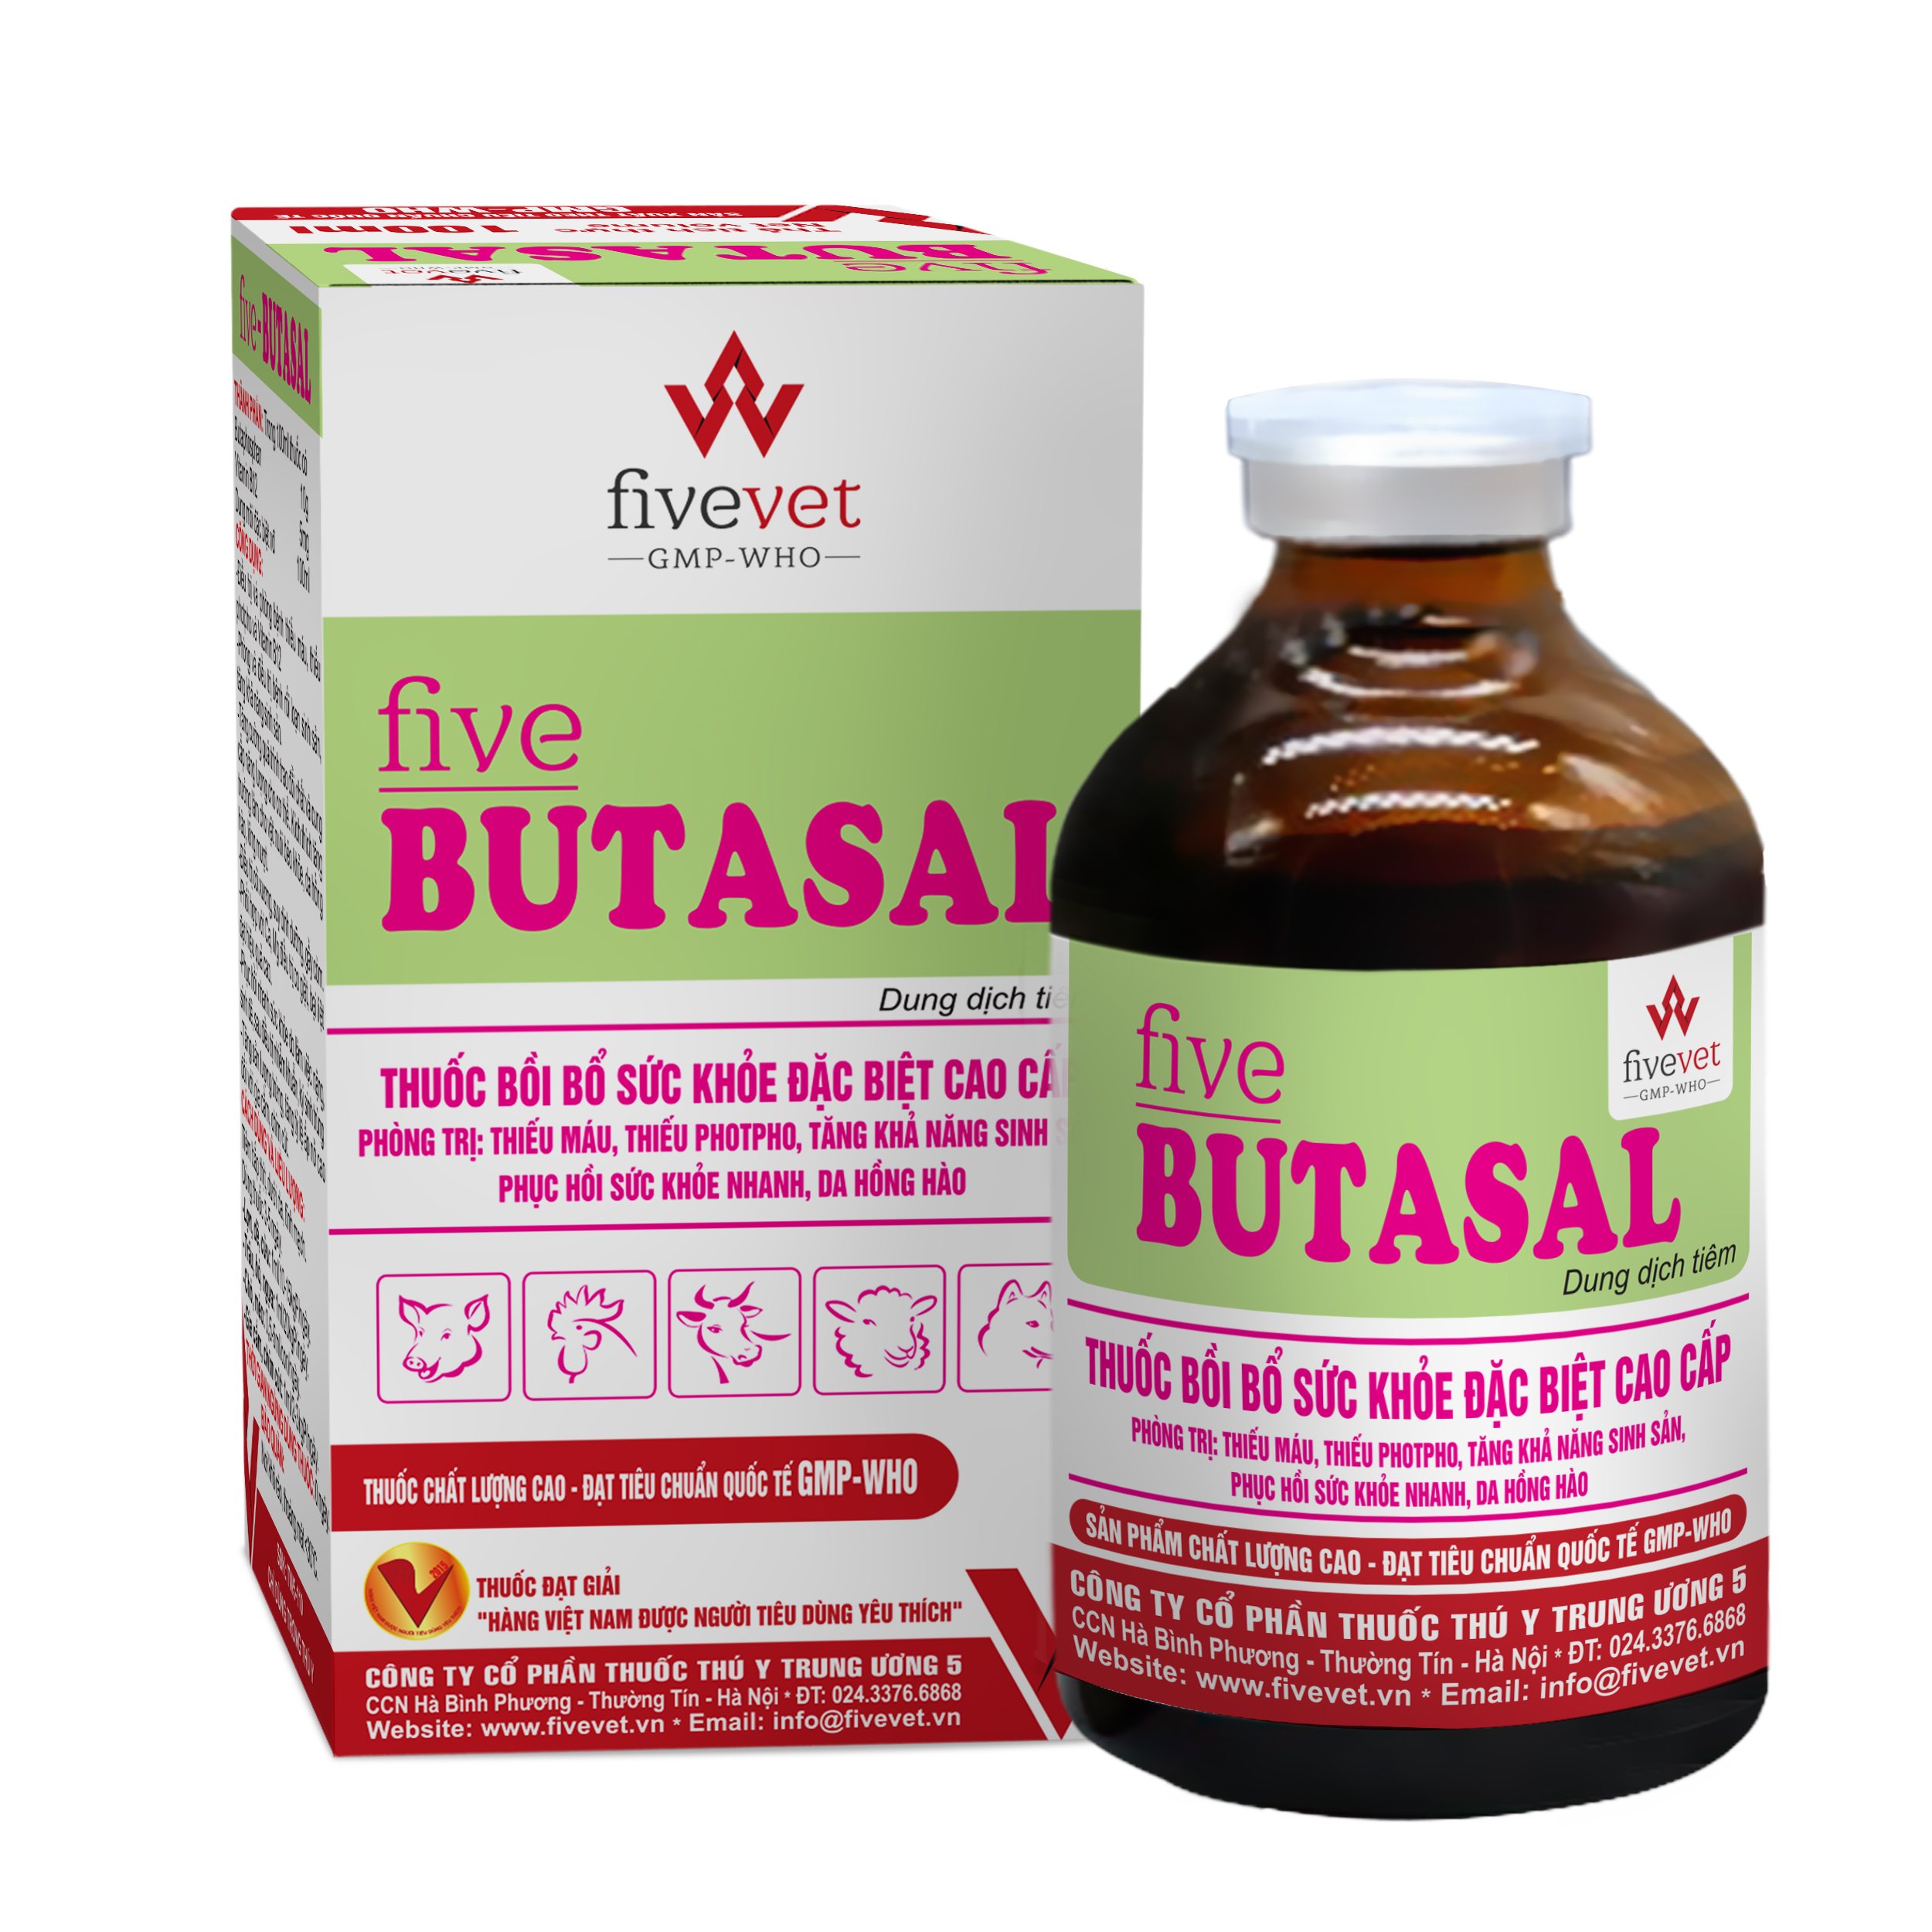 Five-Butasal